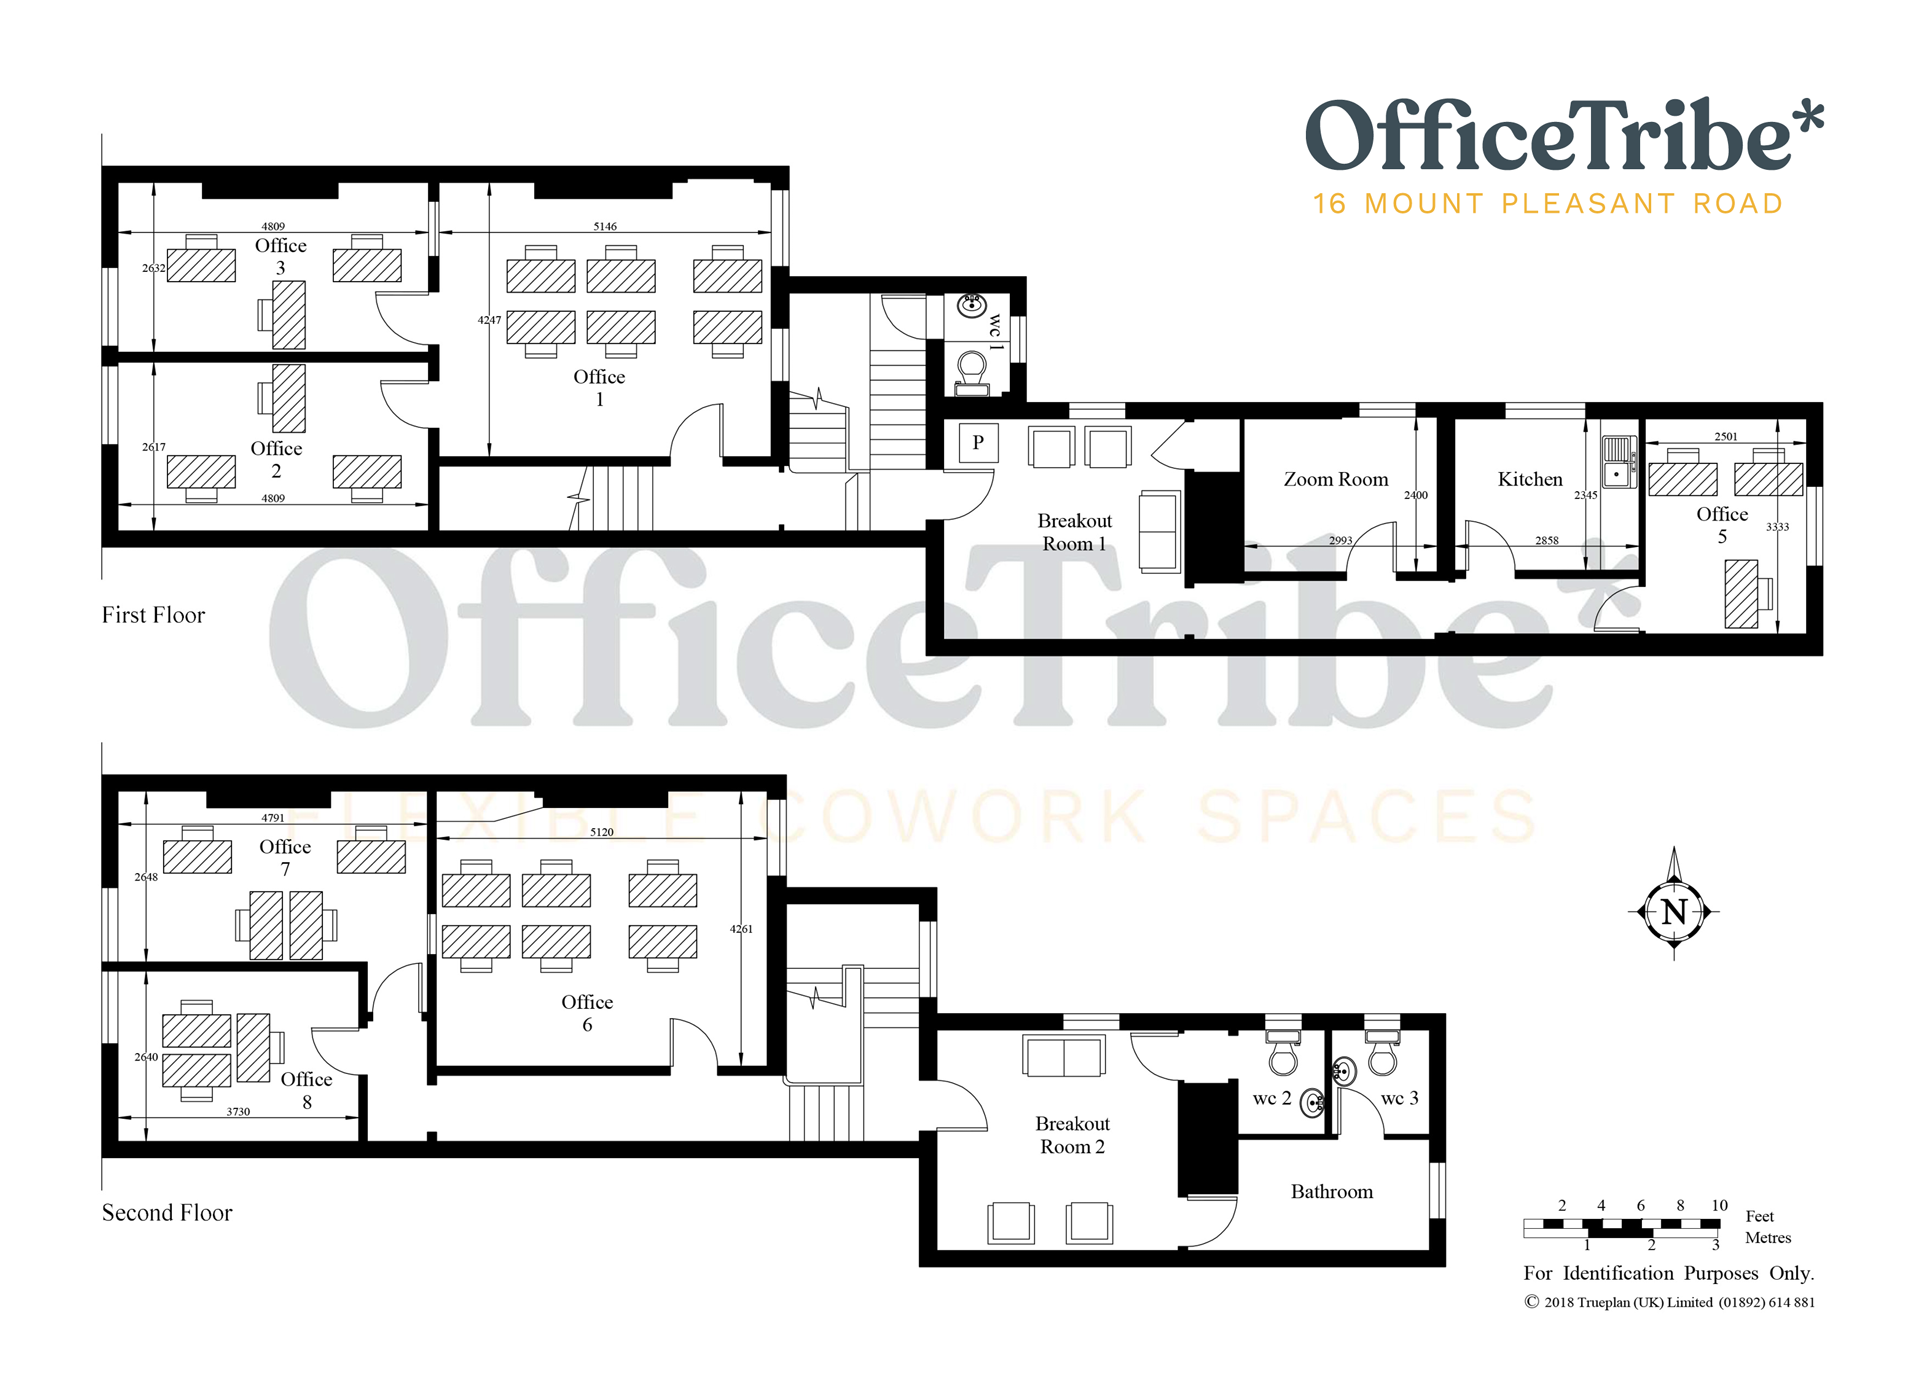 OfficeTribe-Floorplan-16-Mount-Pleasant-Road.png